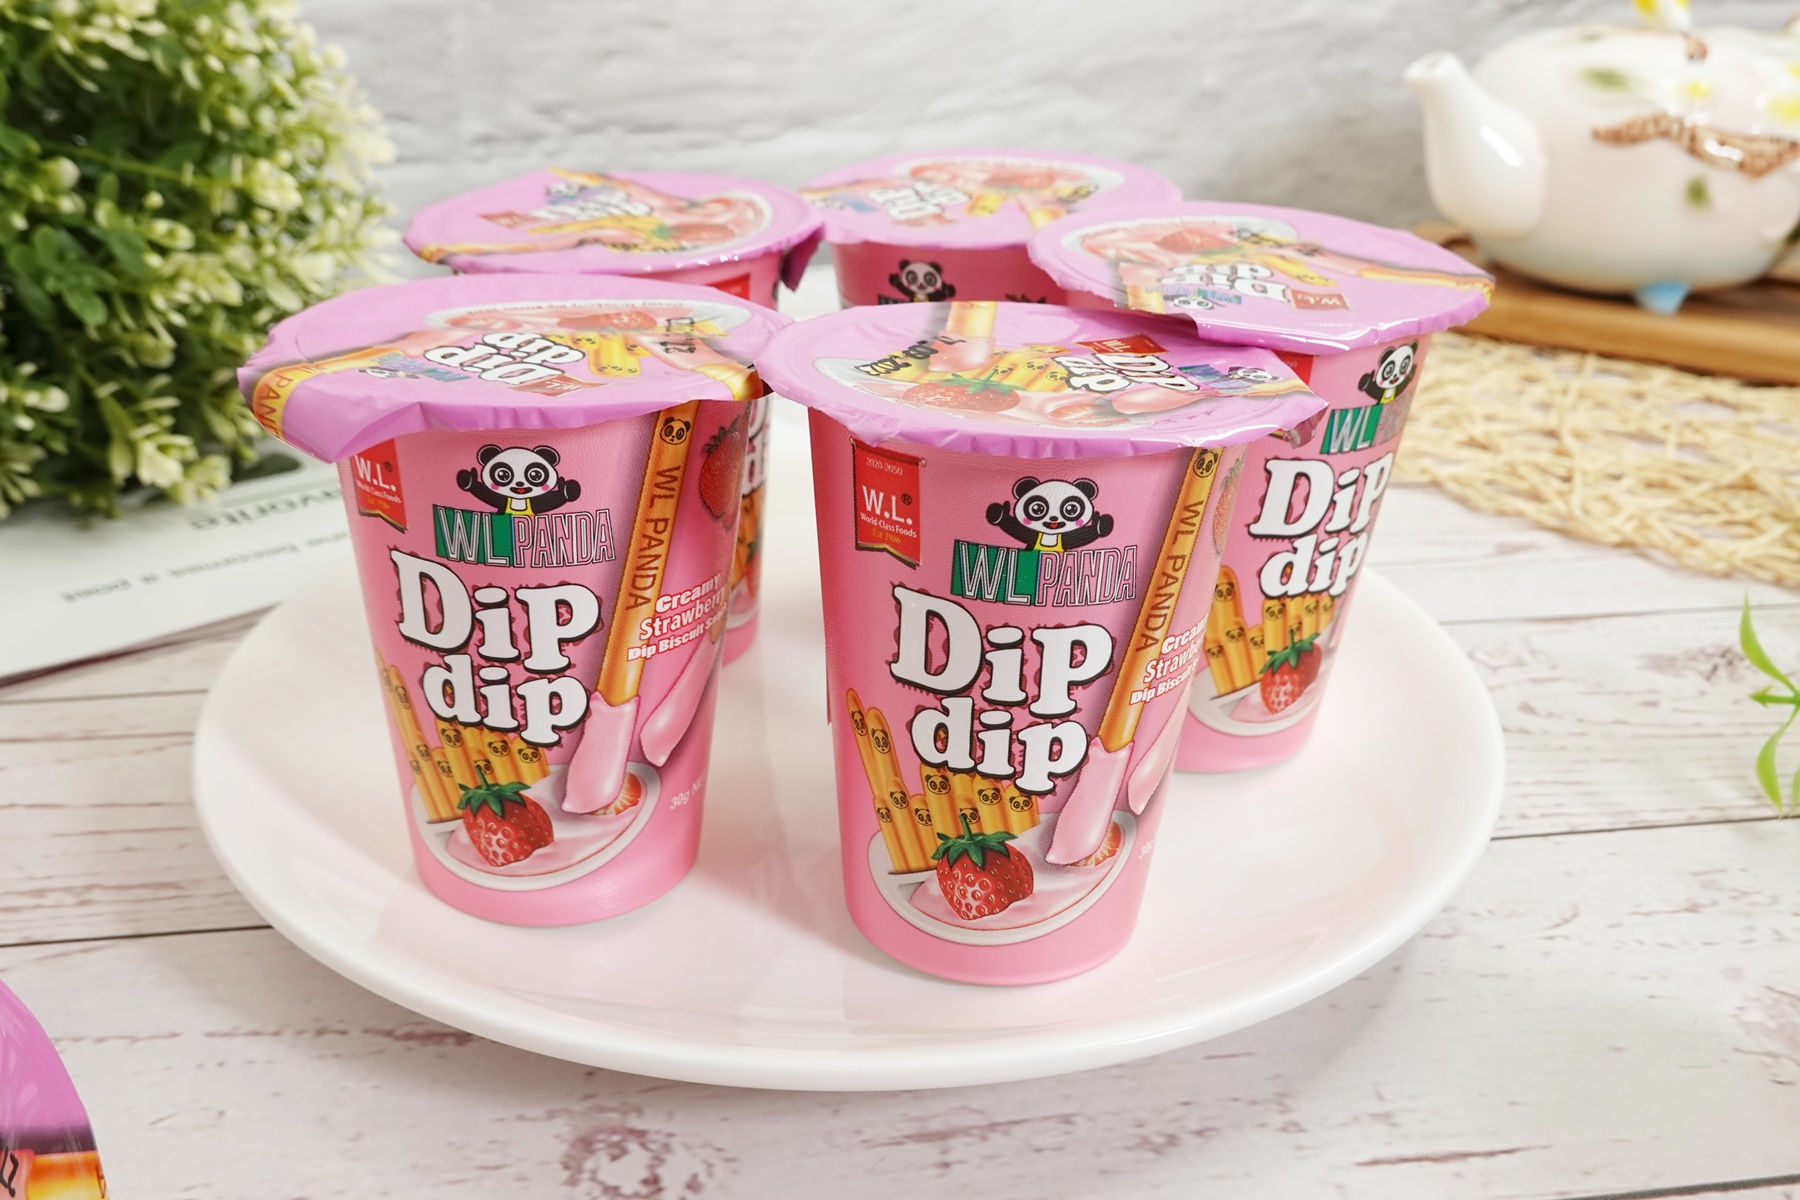 【Dipdip】沾醬餅乾棒任選(10杯/盒) 巧克力／草莓／香草